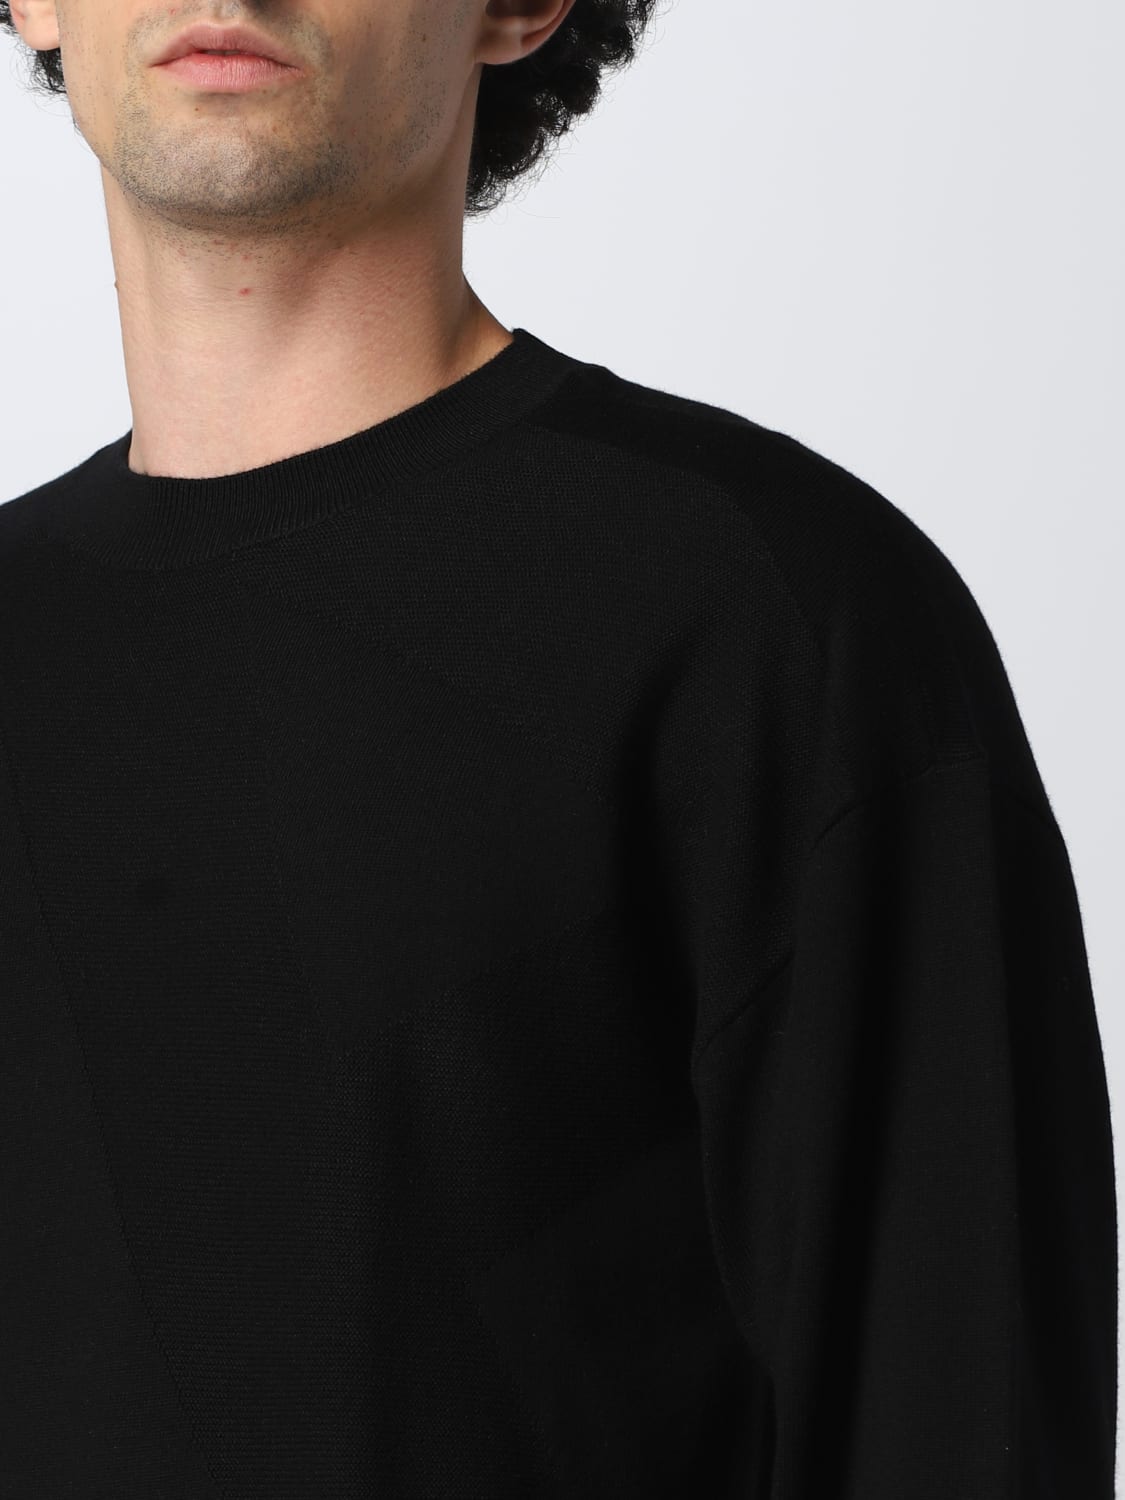 EMPORIO ARMANI: wool sweater - Black | Emporio Armani sweater ...